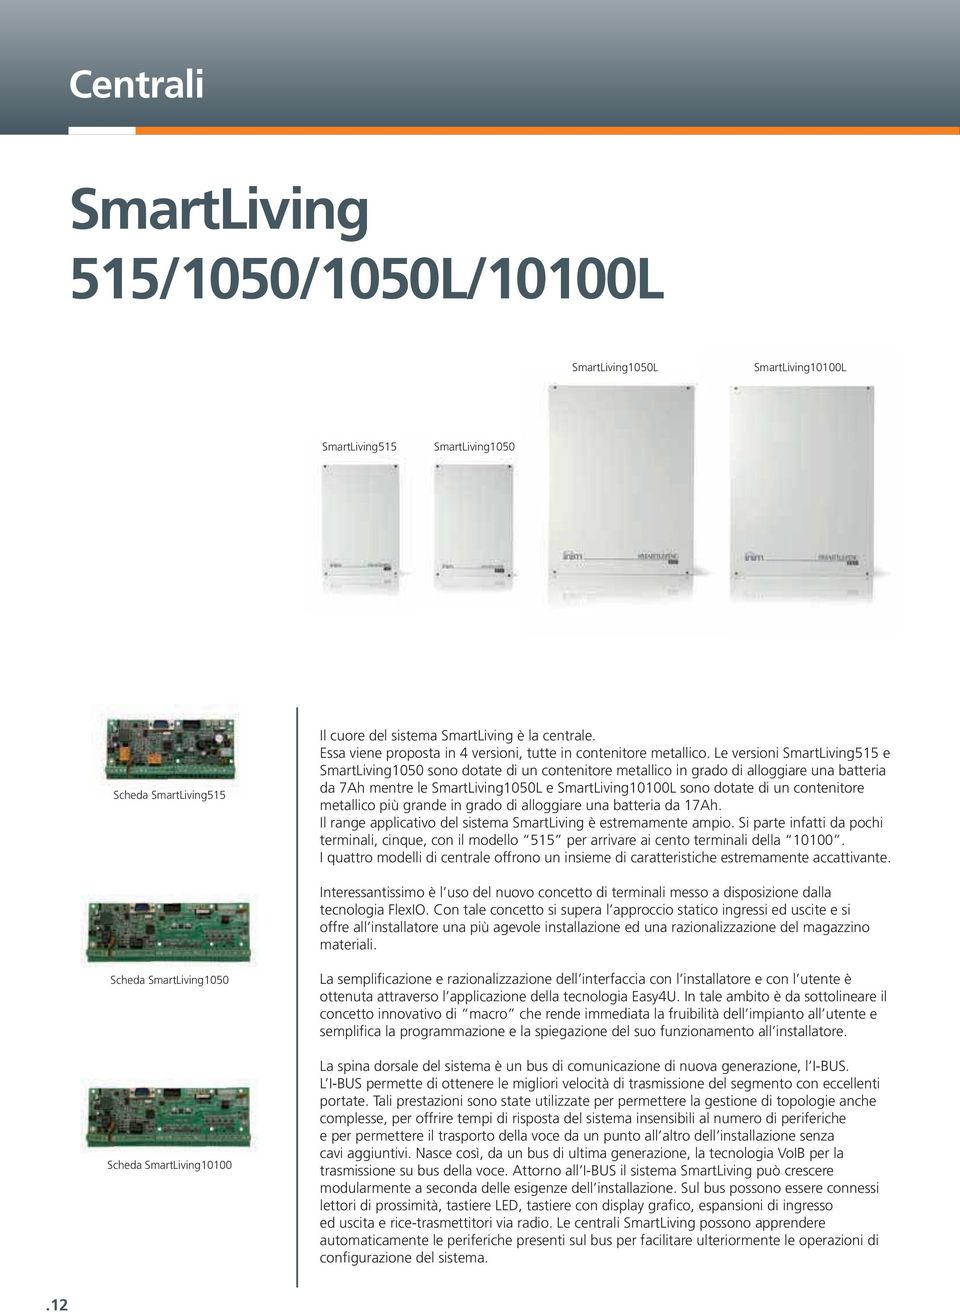 Le versioni SmartLiving515 e SmartLiving1050 sono dotate di un contenitore metallico in grado di alloggiare una batteria da 7Ah mentre le SmartLiving1050L e SmartLiving10100L sono dotate di un